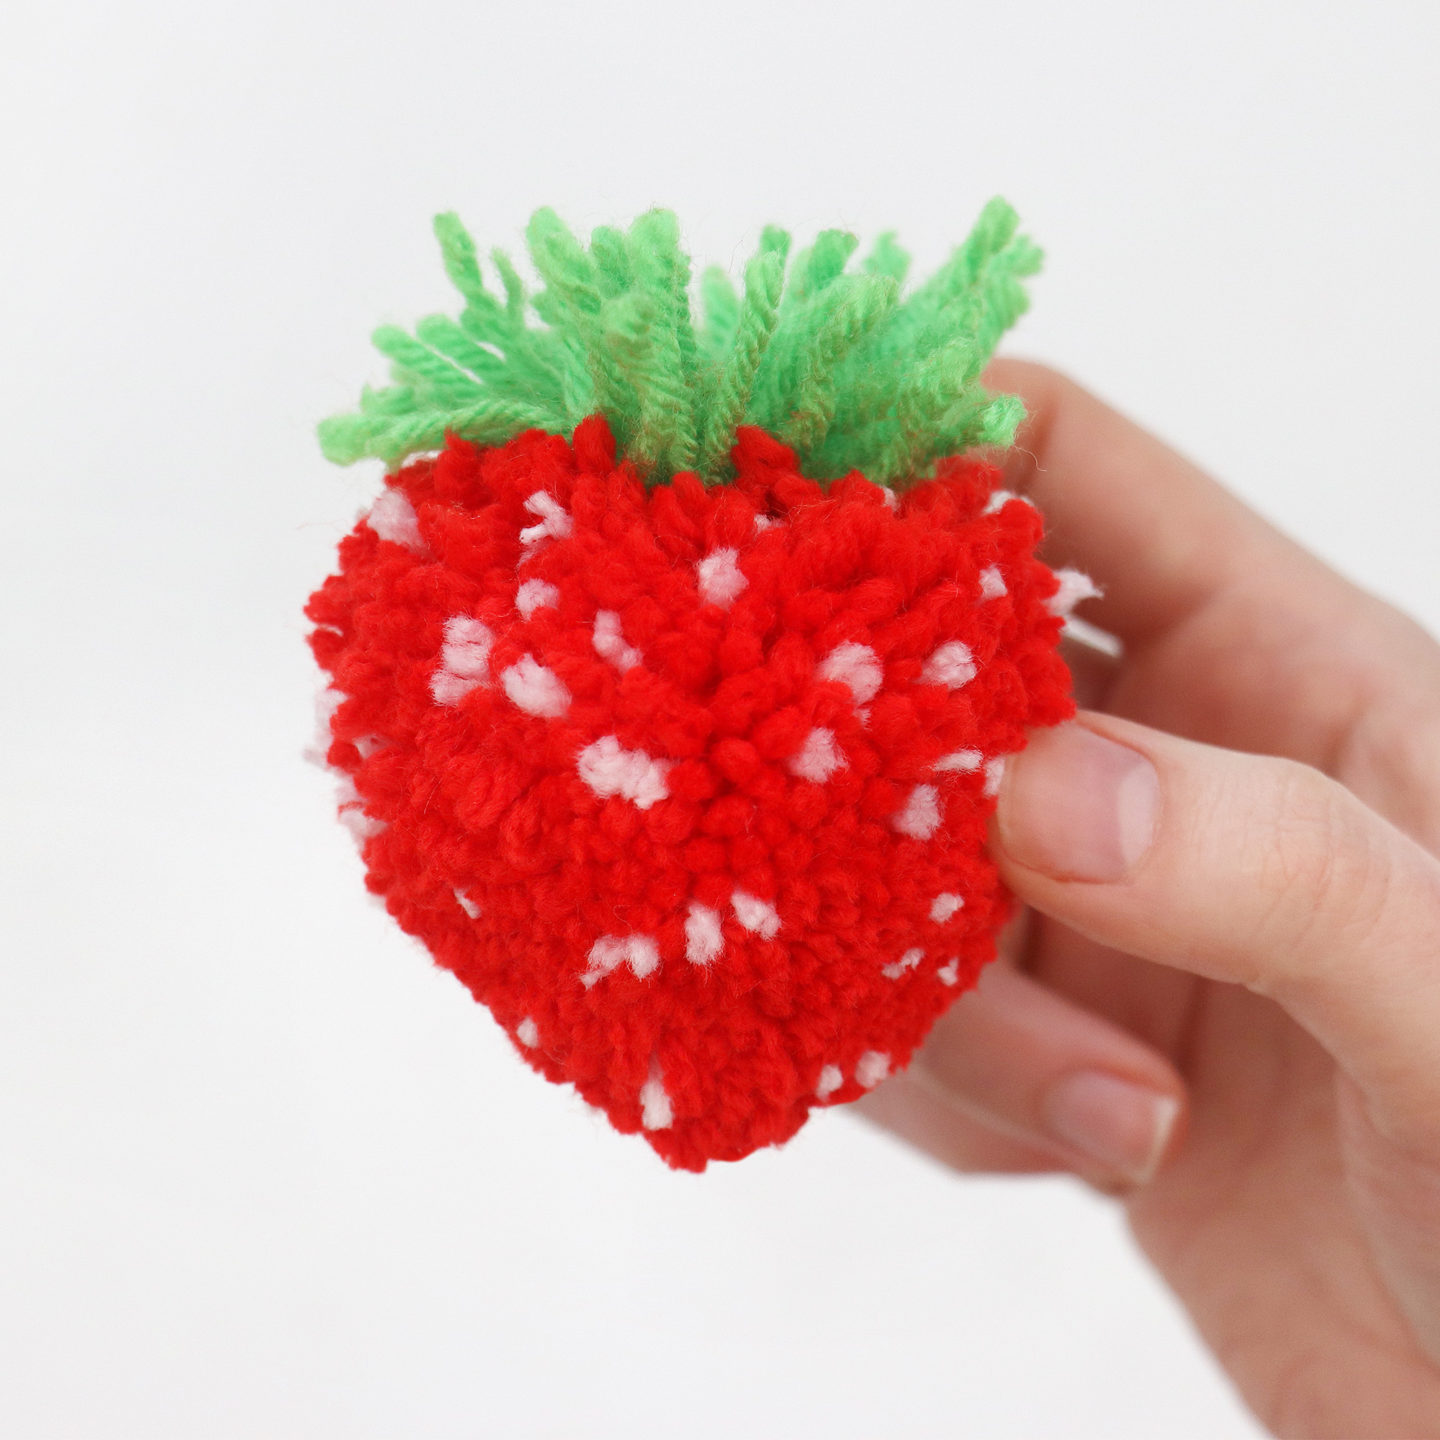 Strawberry Pom Art Tutorial – flynnknit